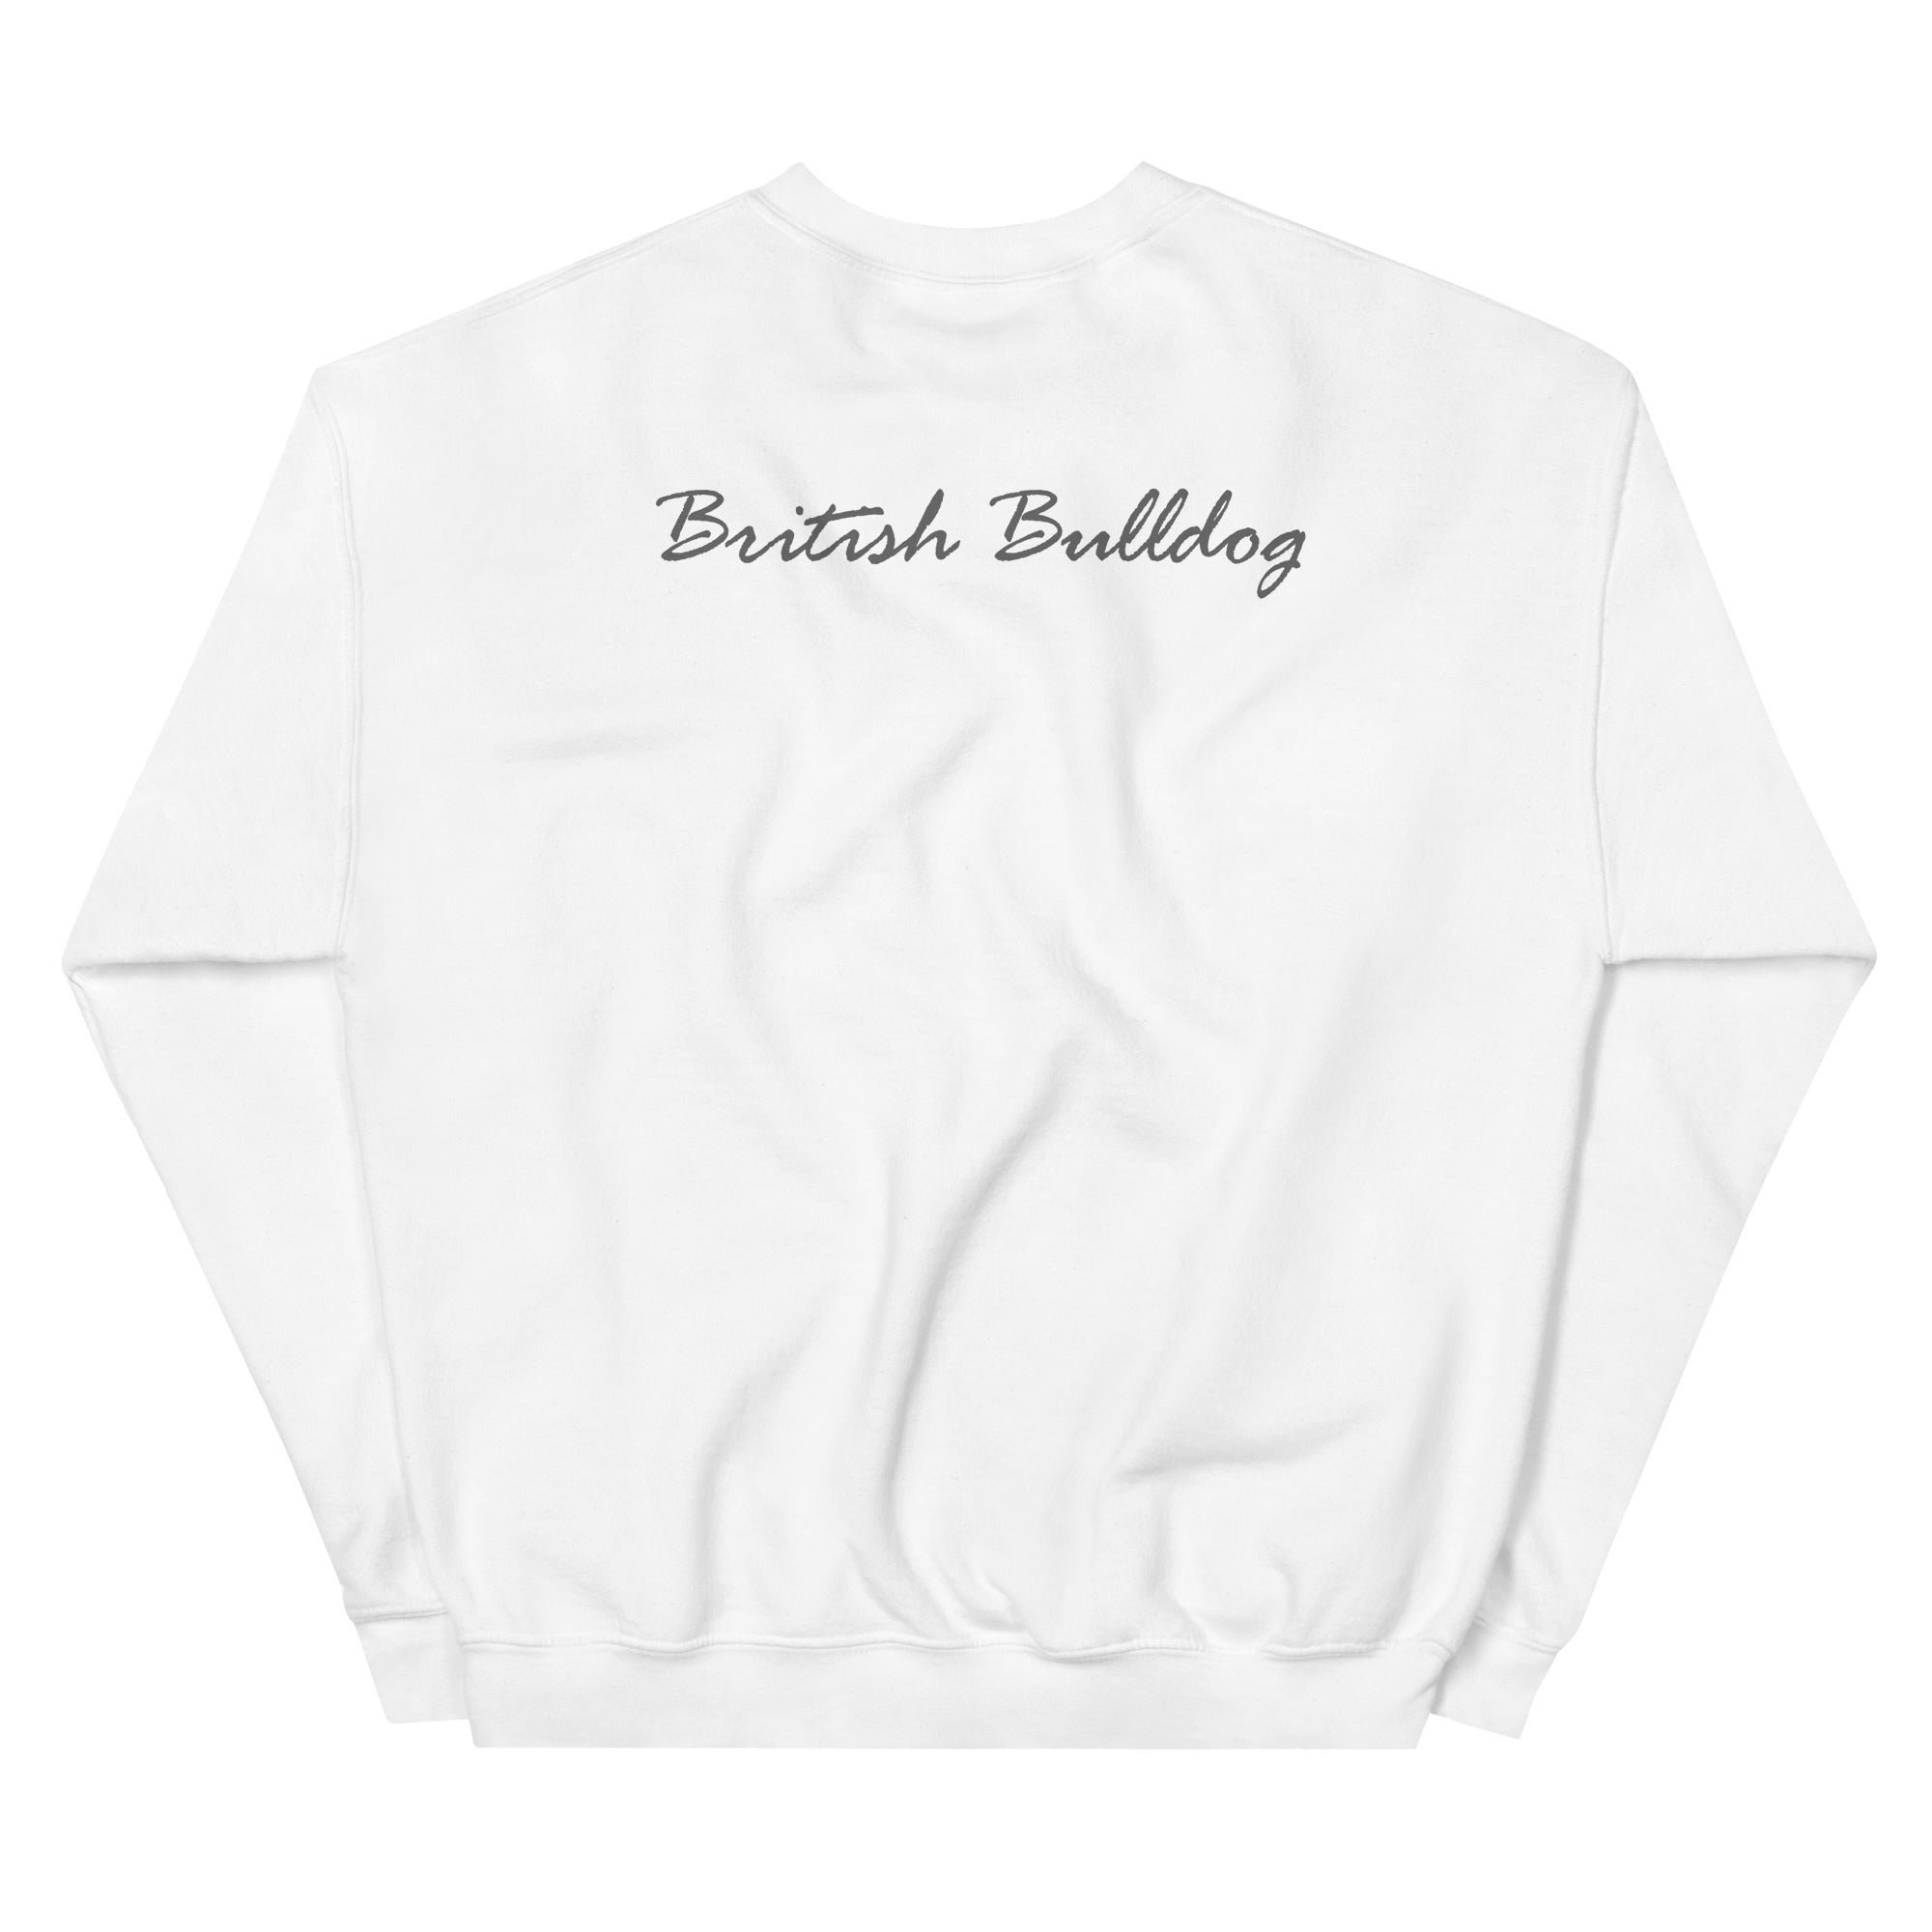 Bulldog Bodybuilding Unisex Sweatshirt